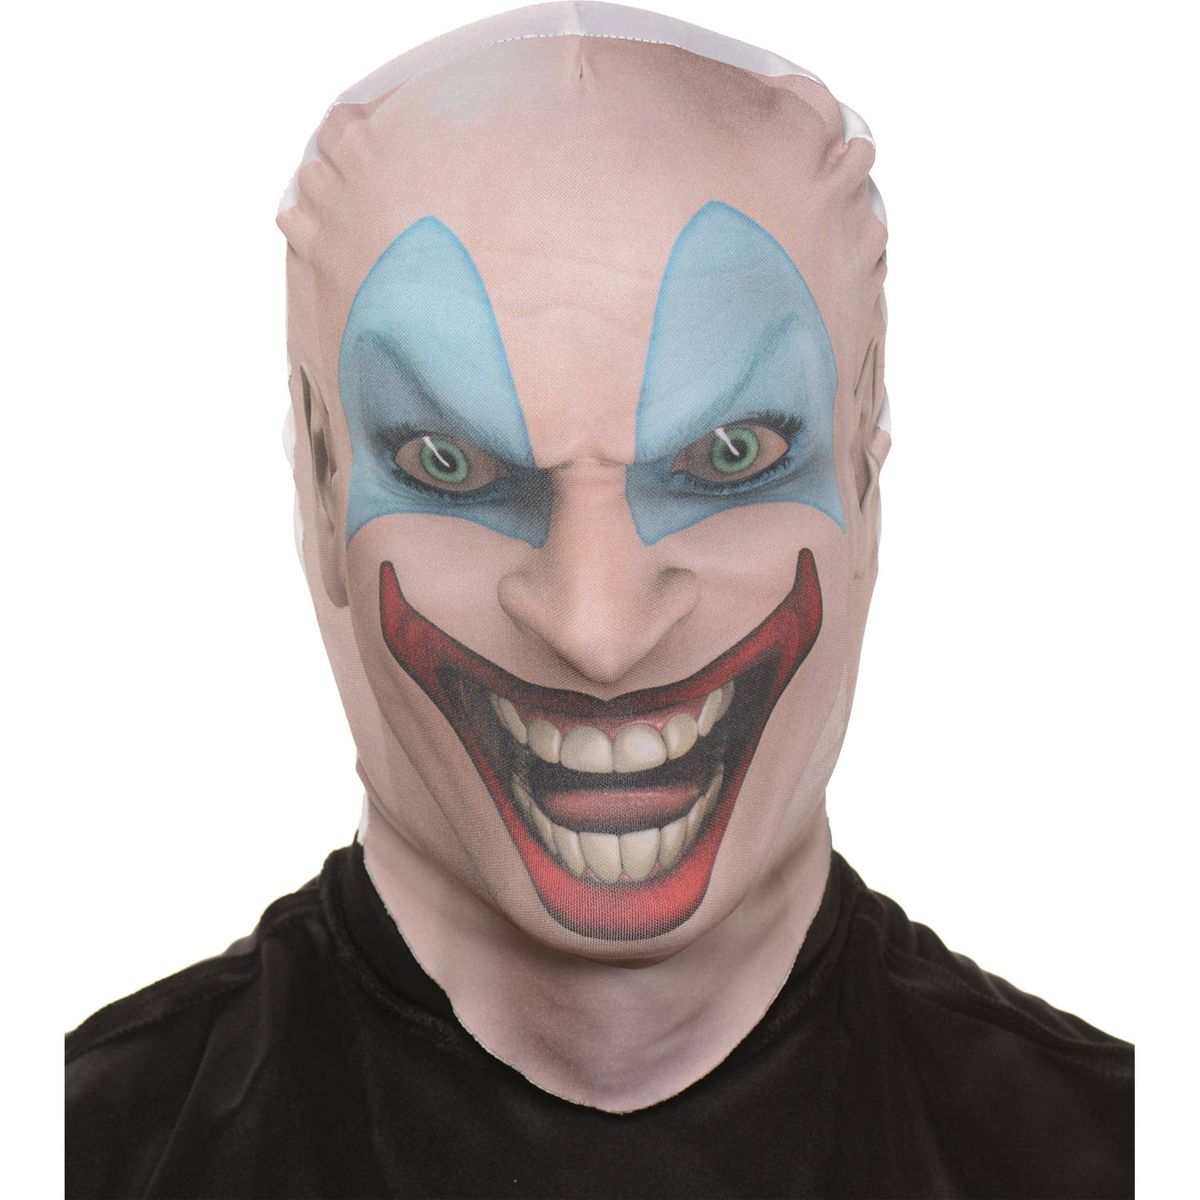 直輸入品激安 SALE 60%OFF 送料無料 キラーピエロスキンマスク 大人用ハロウィンアクセサリー 海外通販 Killer Clown Skin Mask Adult Halloween Accessory paulhuntingford.com paulhuntingford.com